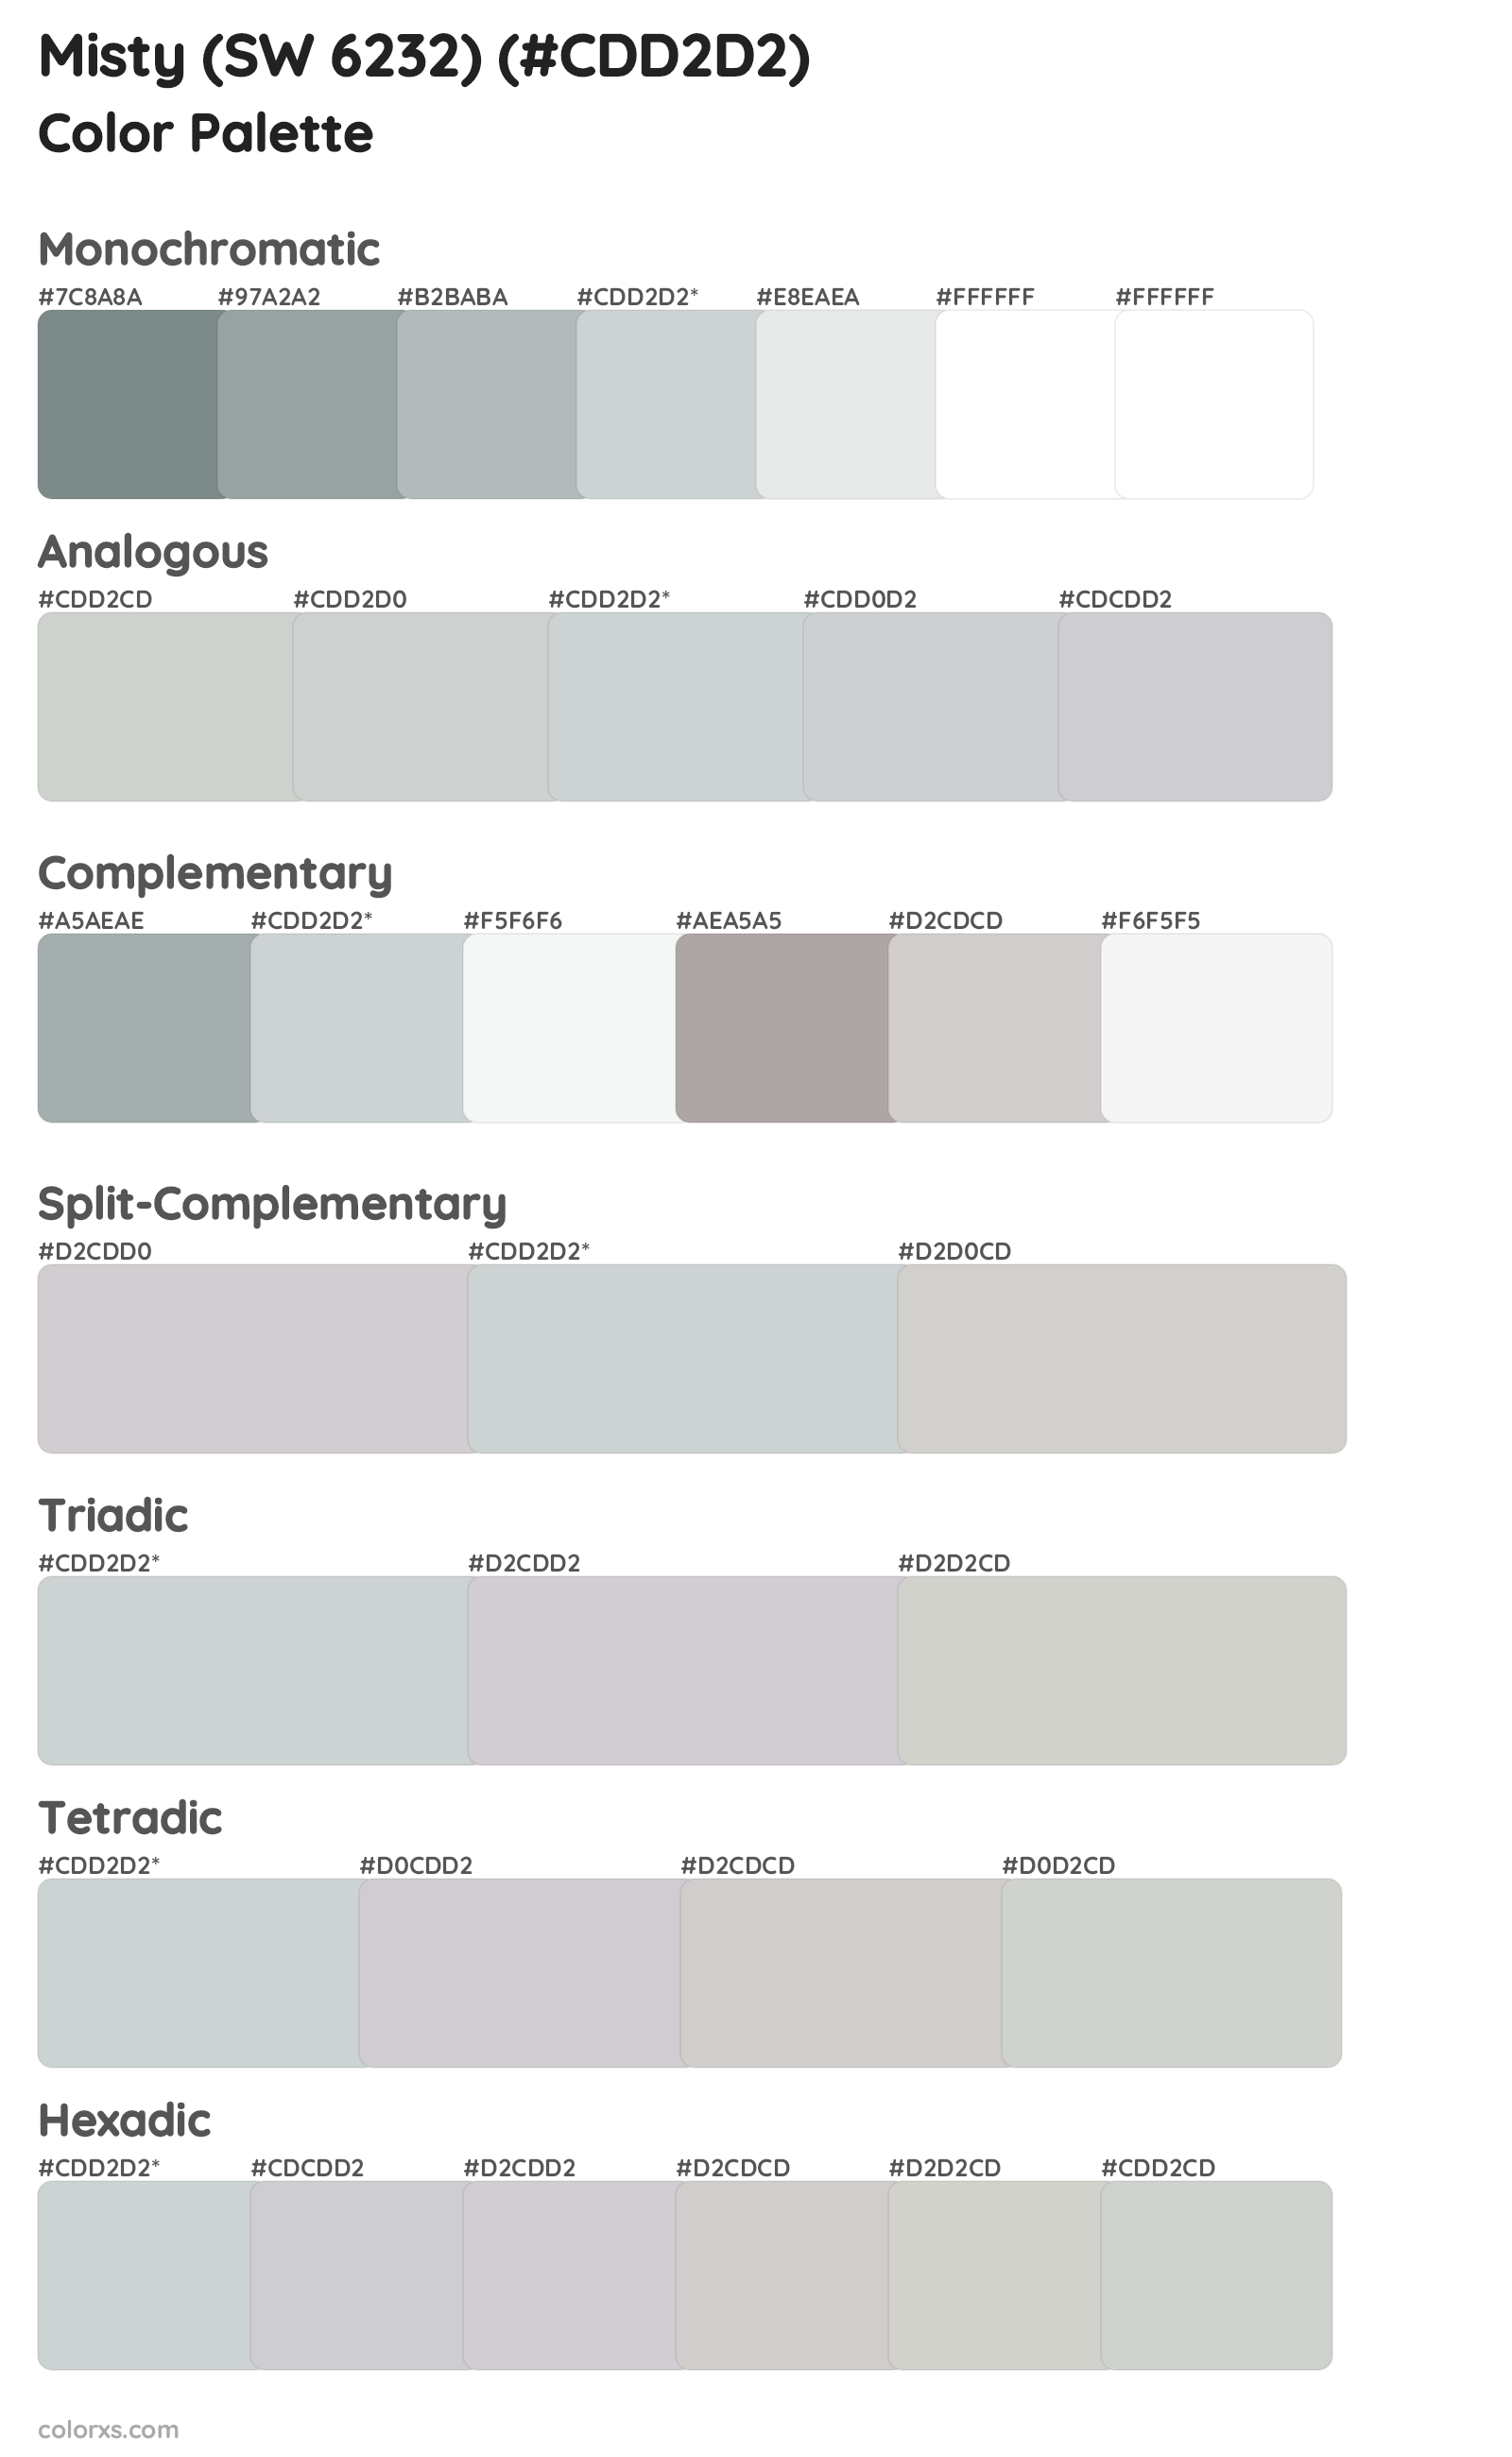 Misty (SW 6232) Color Scheme Palettes